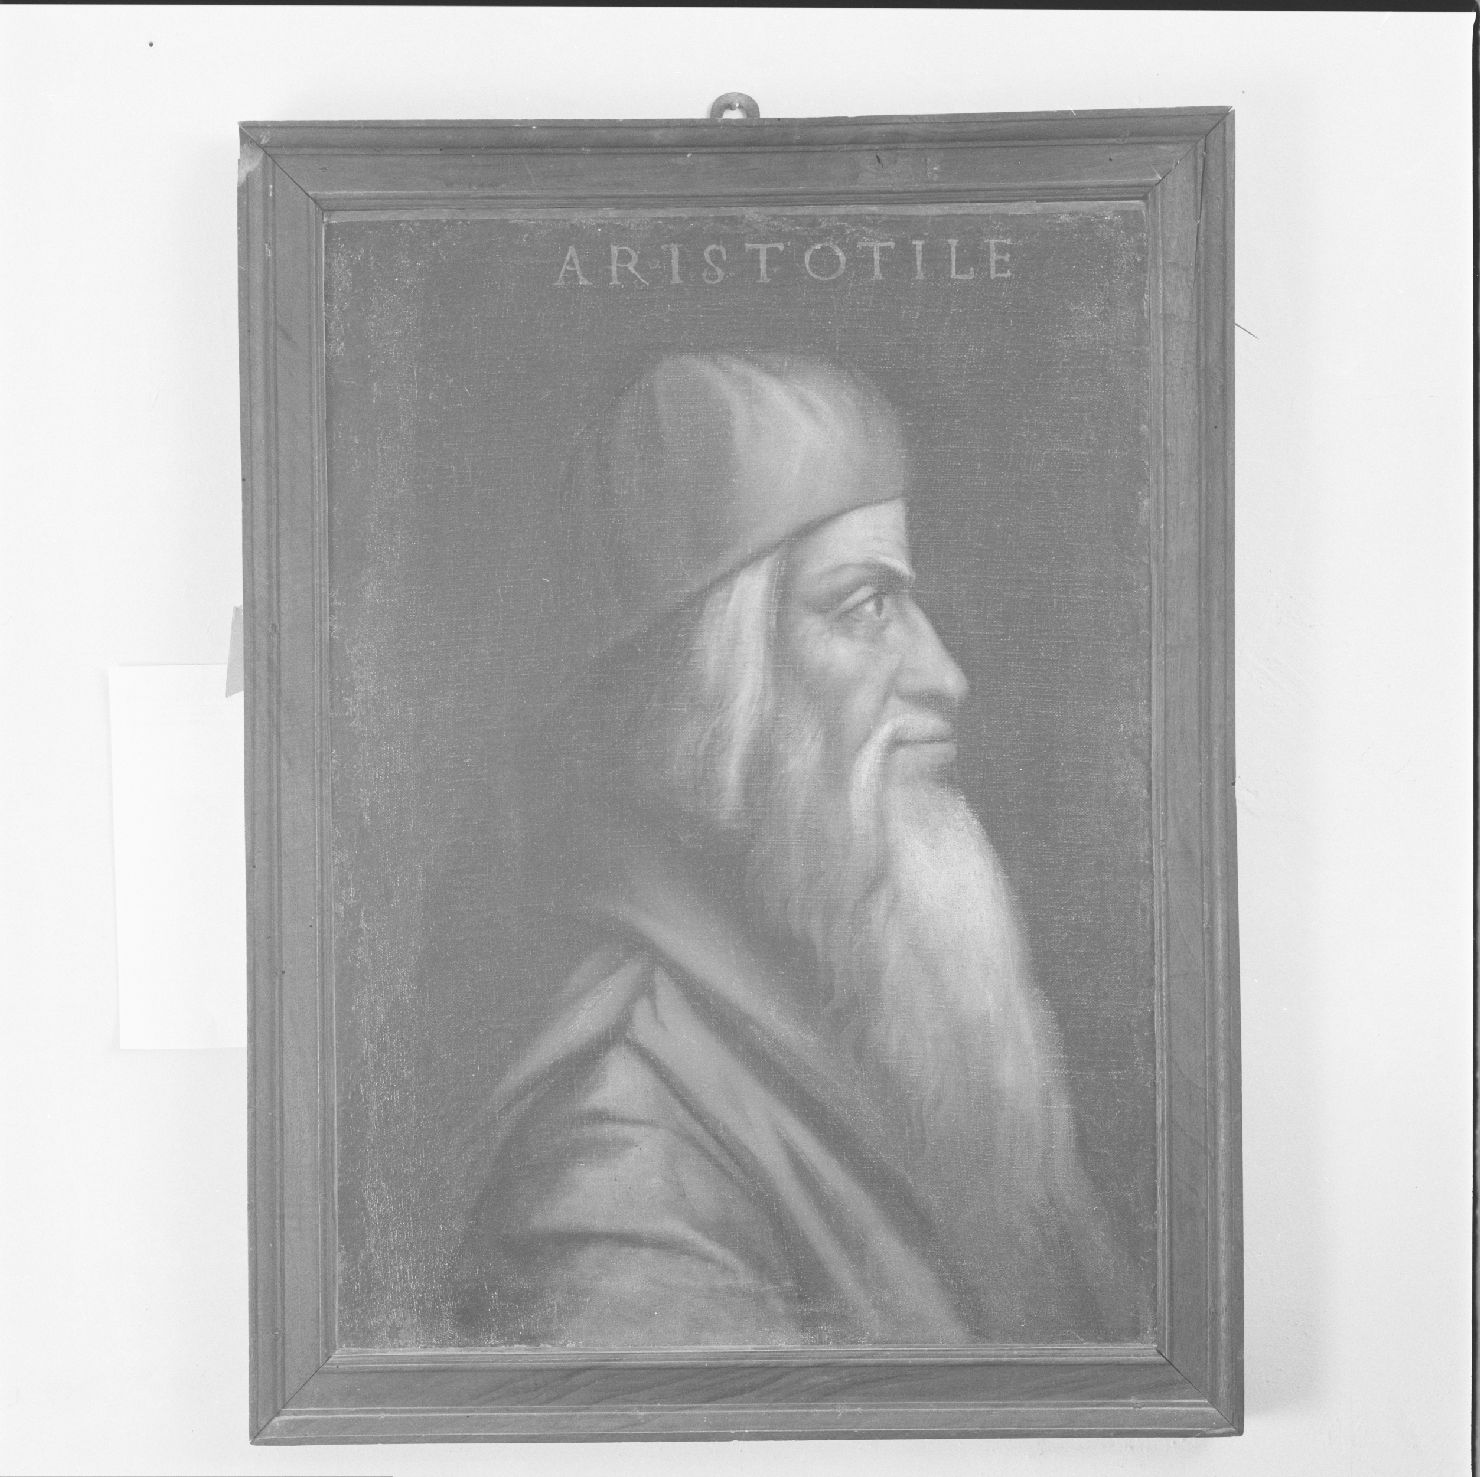 ritratto di Aristotele (dipinto) di Fiori Federico detto Barocci (maniera) (inizio sec. XVII)